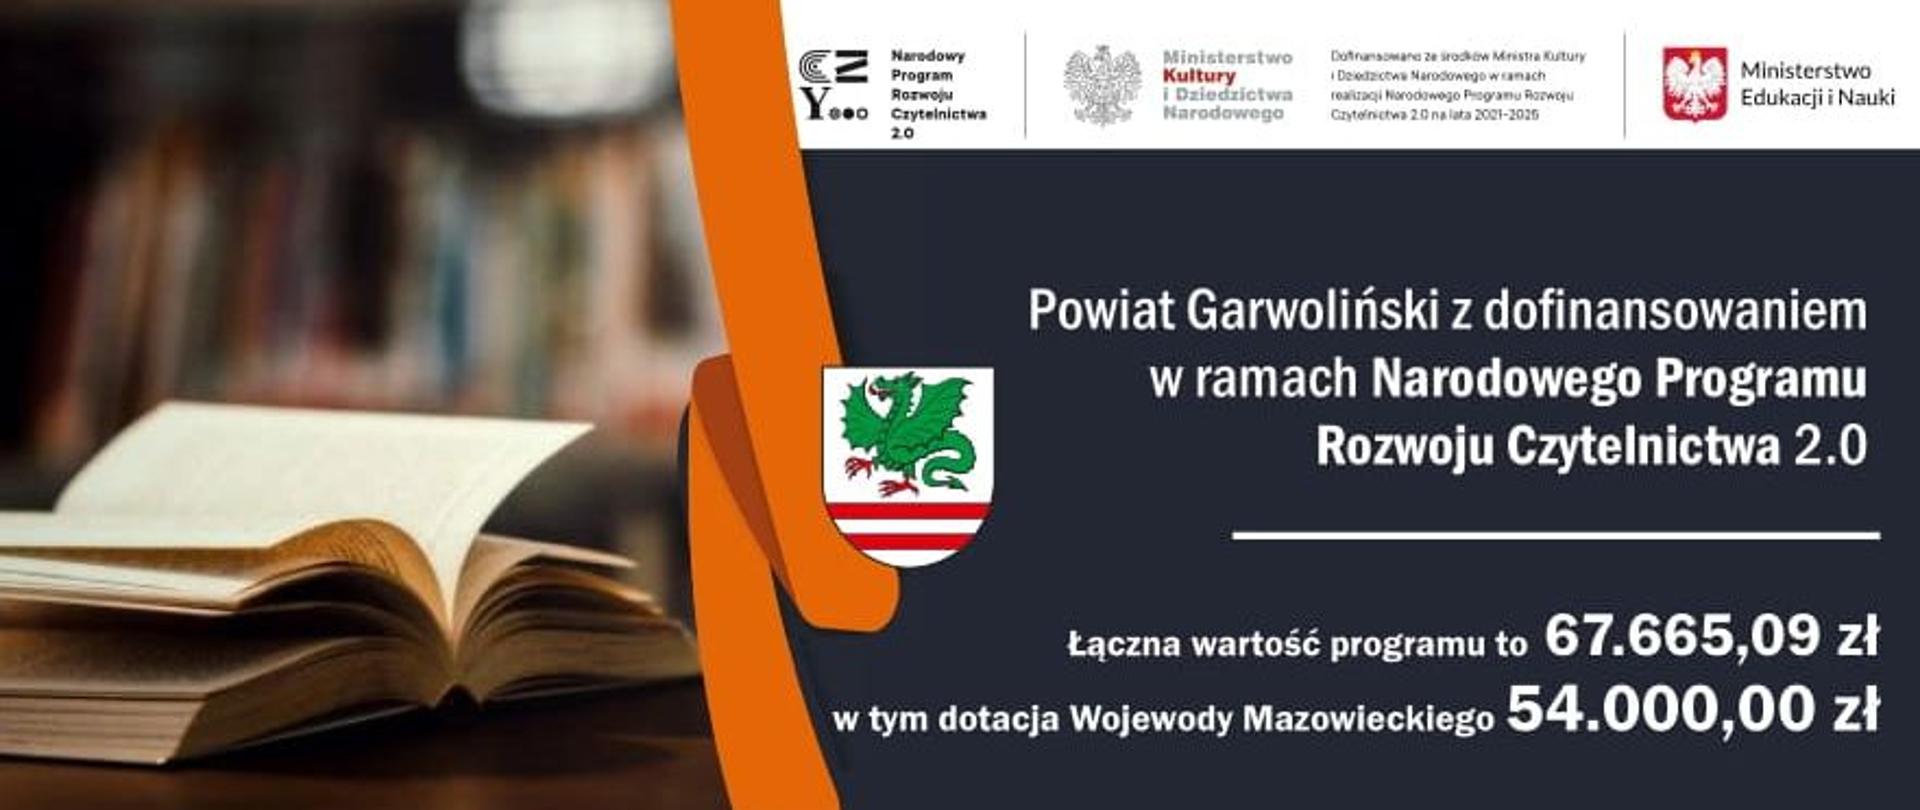 Narodowy Program Rozwoju Czytelnictwa 2.0 - Powiat Garwoliński informacja o dotacji